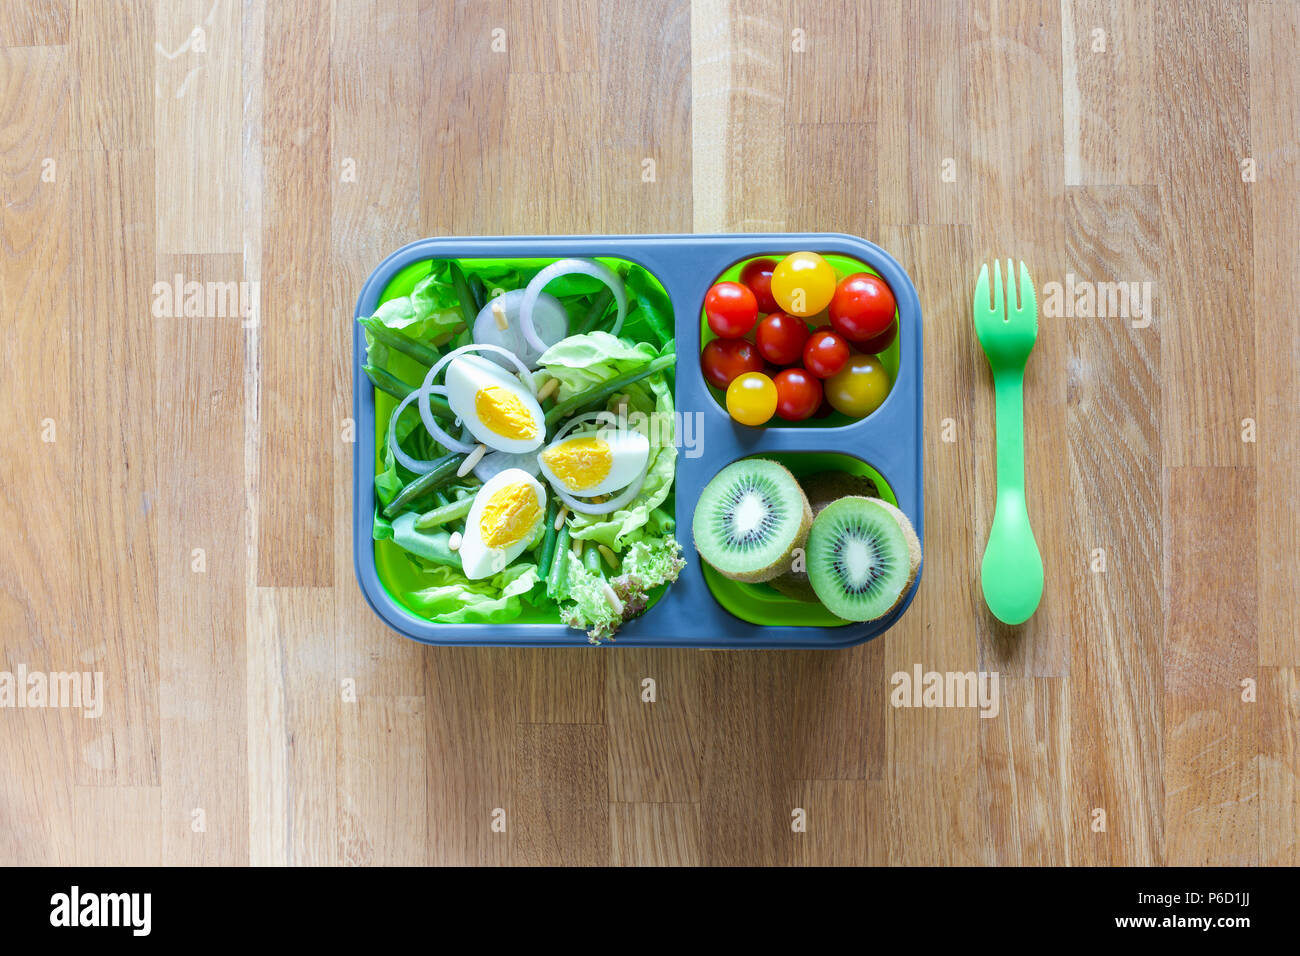 Silicone pliable boîte à lunch avec des aliments (salades vertes, des oeufs, des tomates, kiwi) on wooden table Banque D'Images